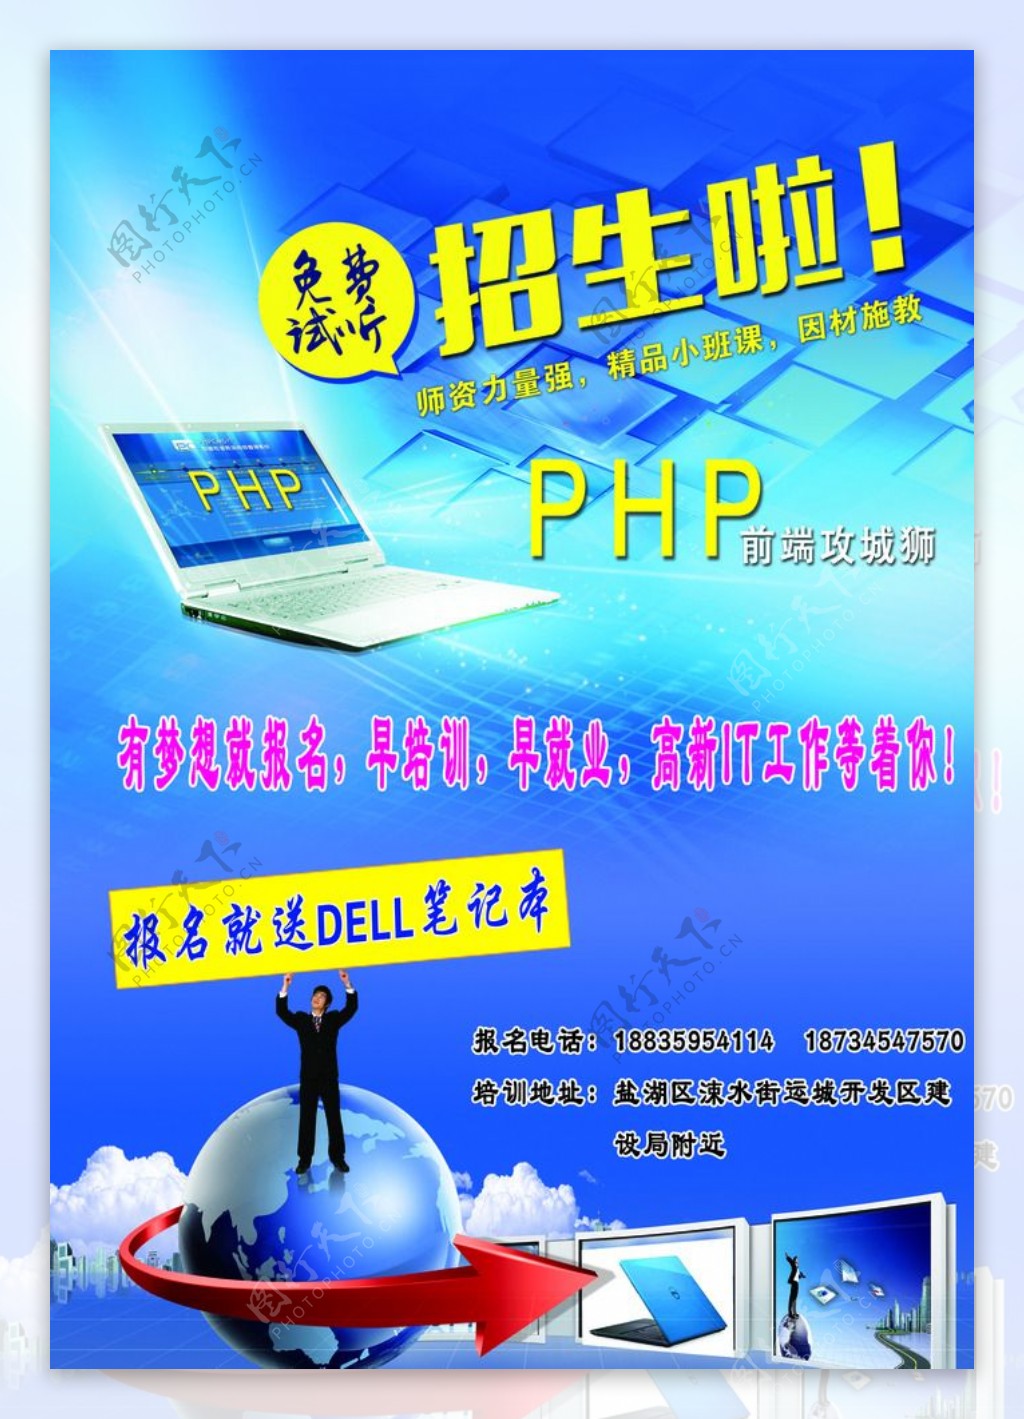 招生啦PHP全栈工程师